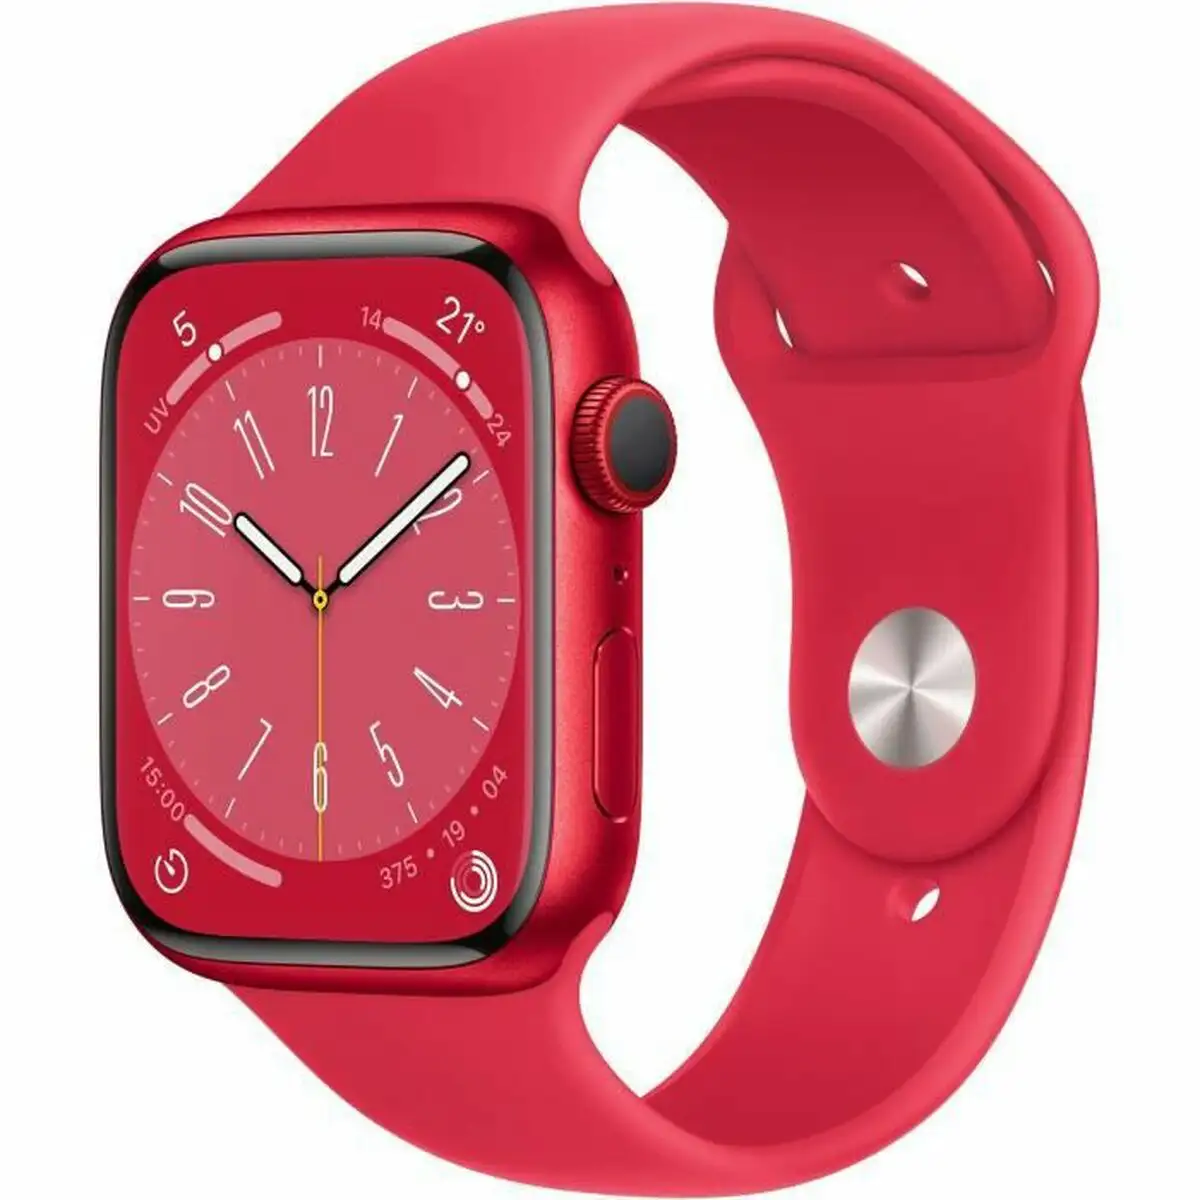 Montre intelligente apple watch series 8 rouge 4g watchos 9_6979. Bienvenue sur DIAYTAR SENEGAL - Votre Galerie Shopping Personnalisée. Découvrez un monde de produits diversifiés qui expriment votre style unique et votre passion pour la qualité.